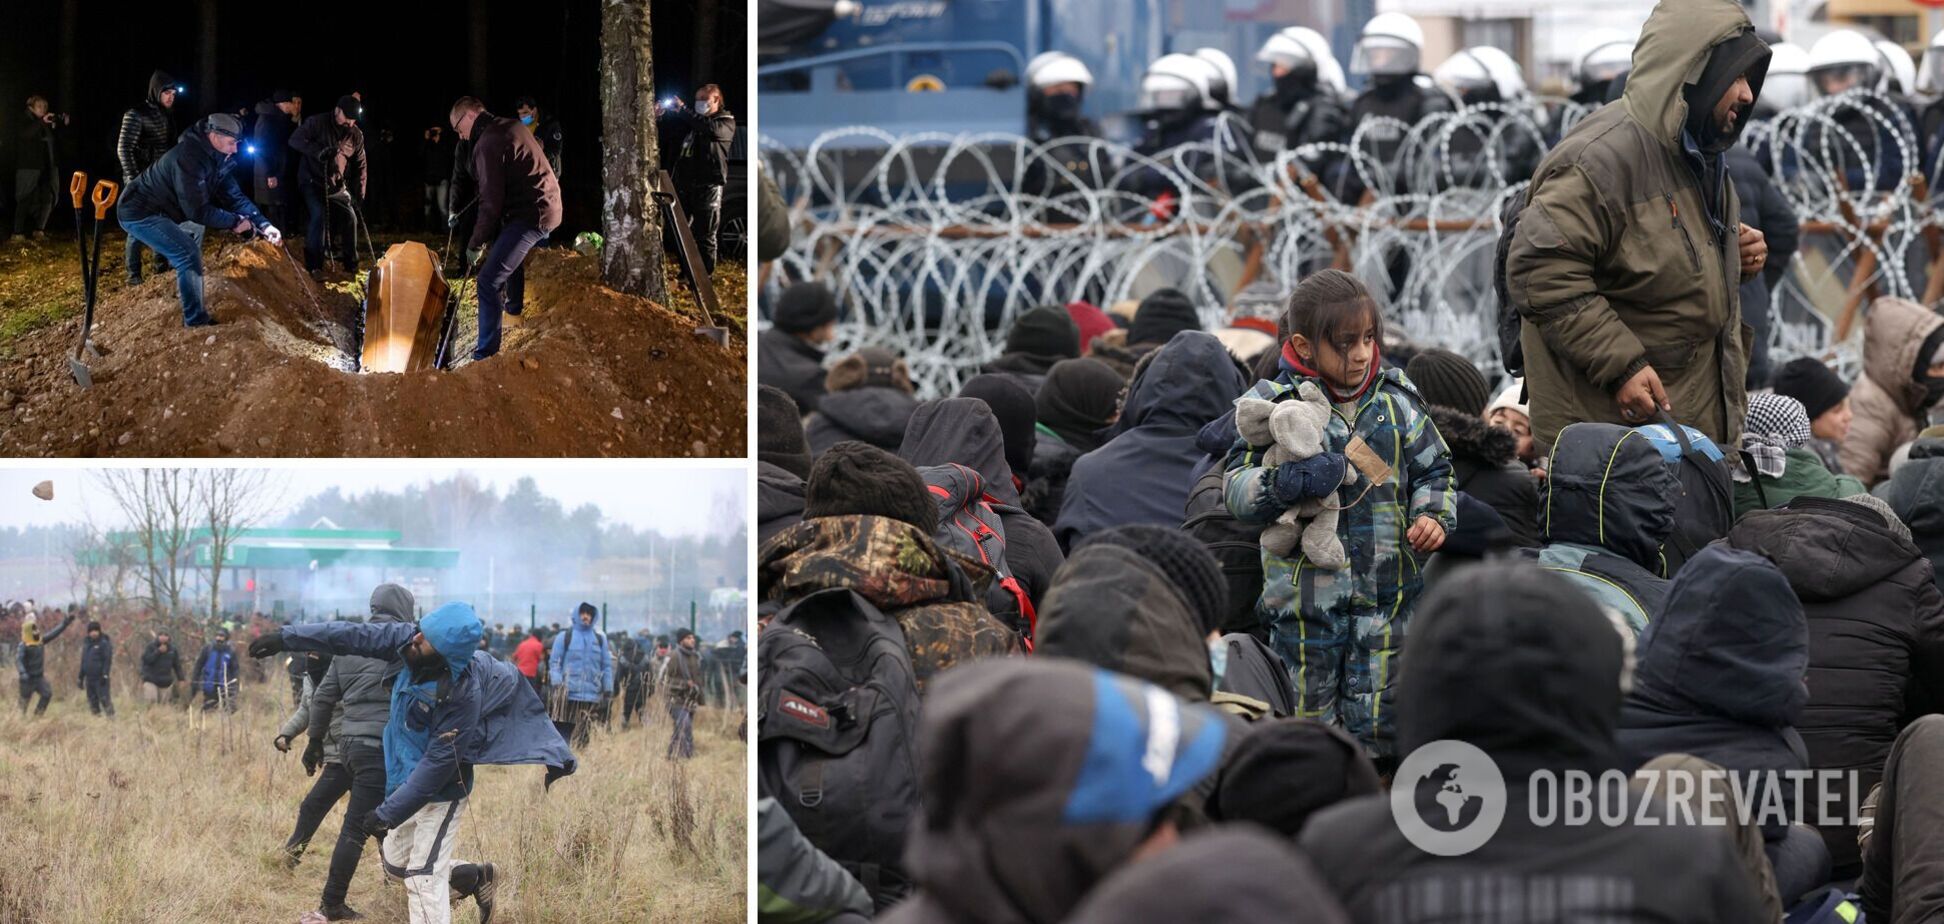 Обдурені режимом Лукашенка. Що відбувається у таборі мігрантів на кордоні Білорусі та Польщі. Фоторепортаж